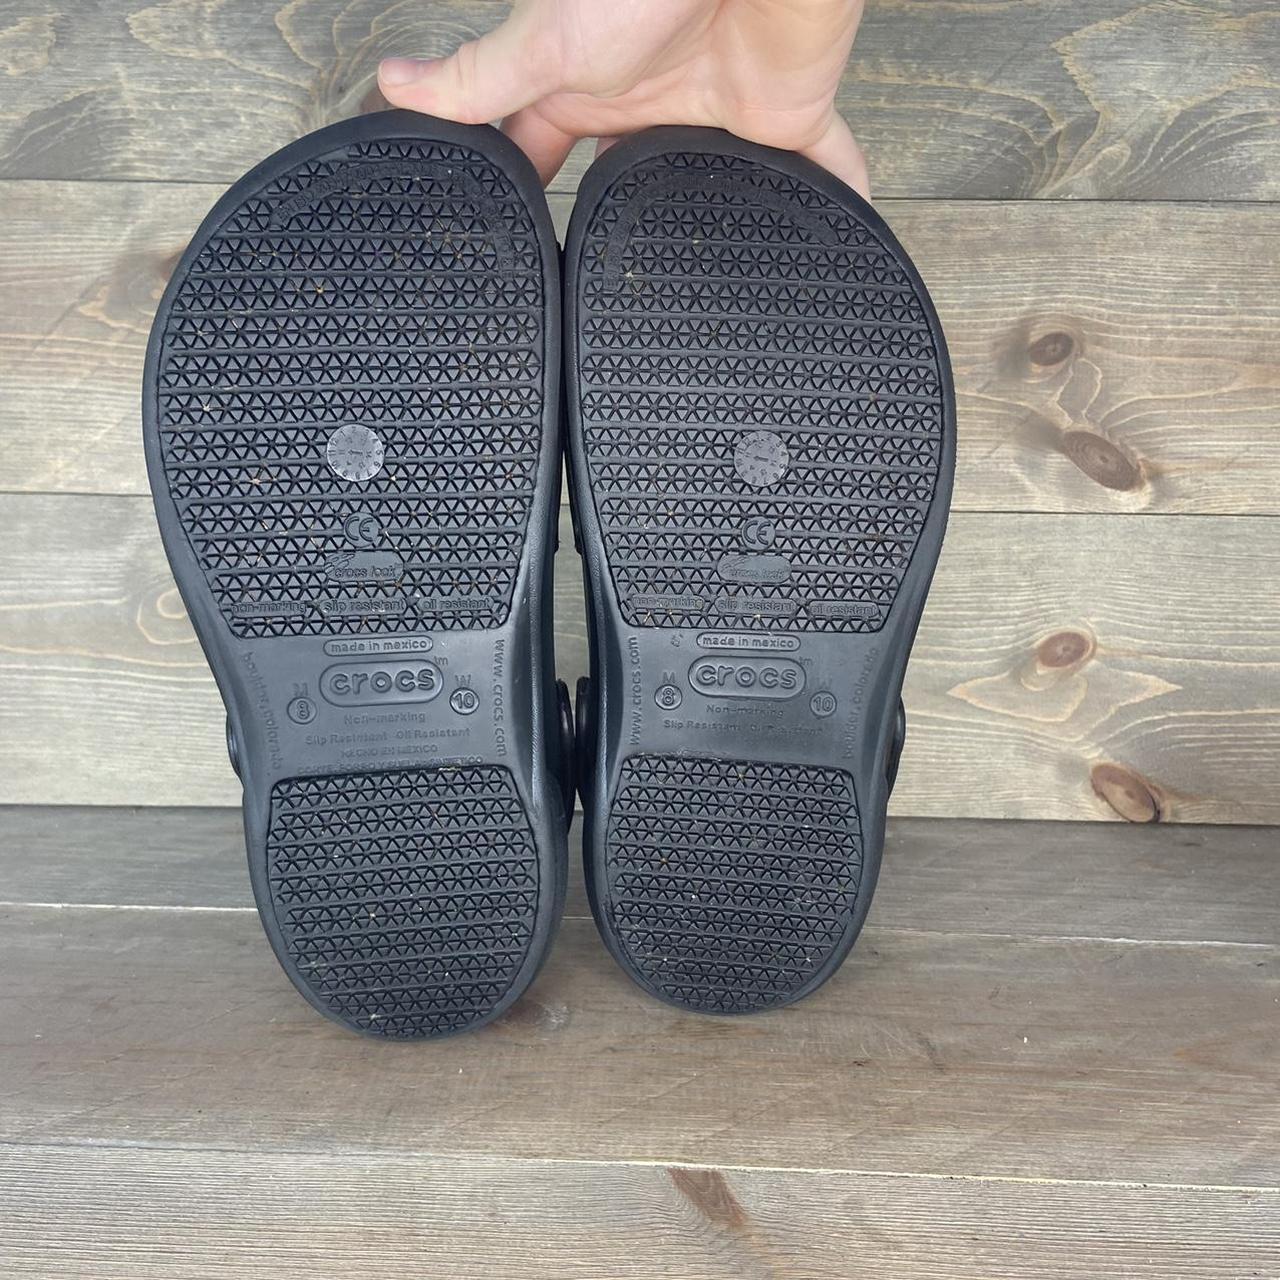 Product Image 3 - Crocs bistro slip resistant clogs